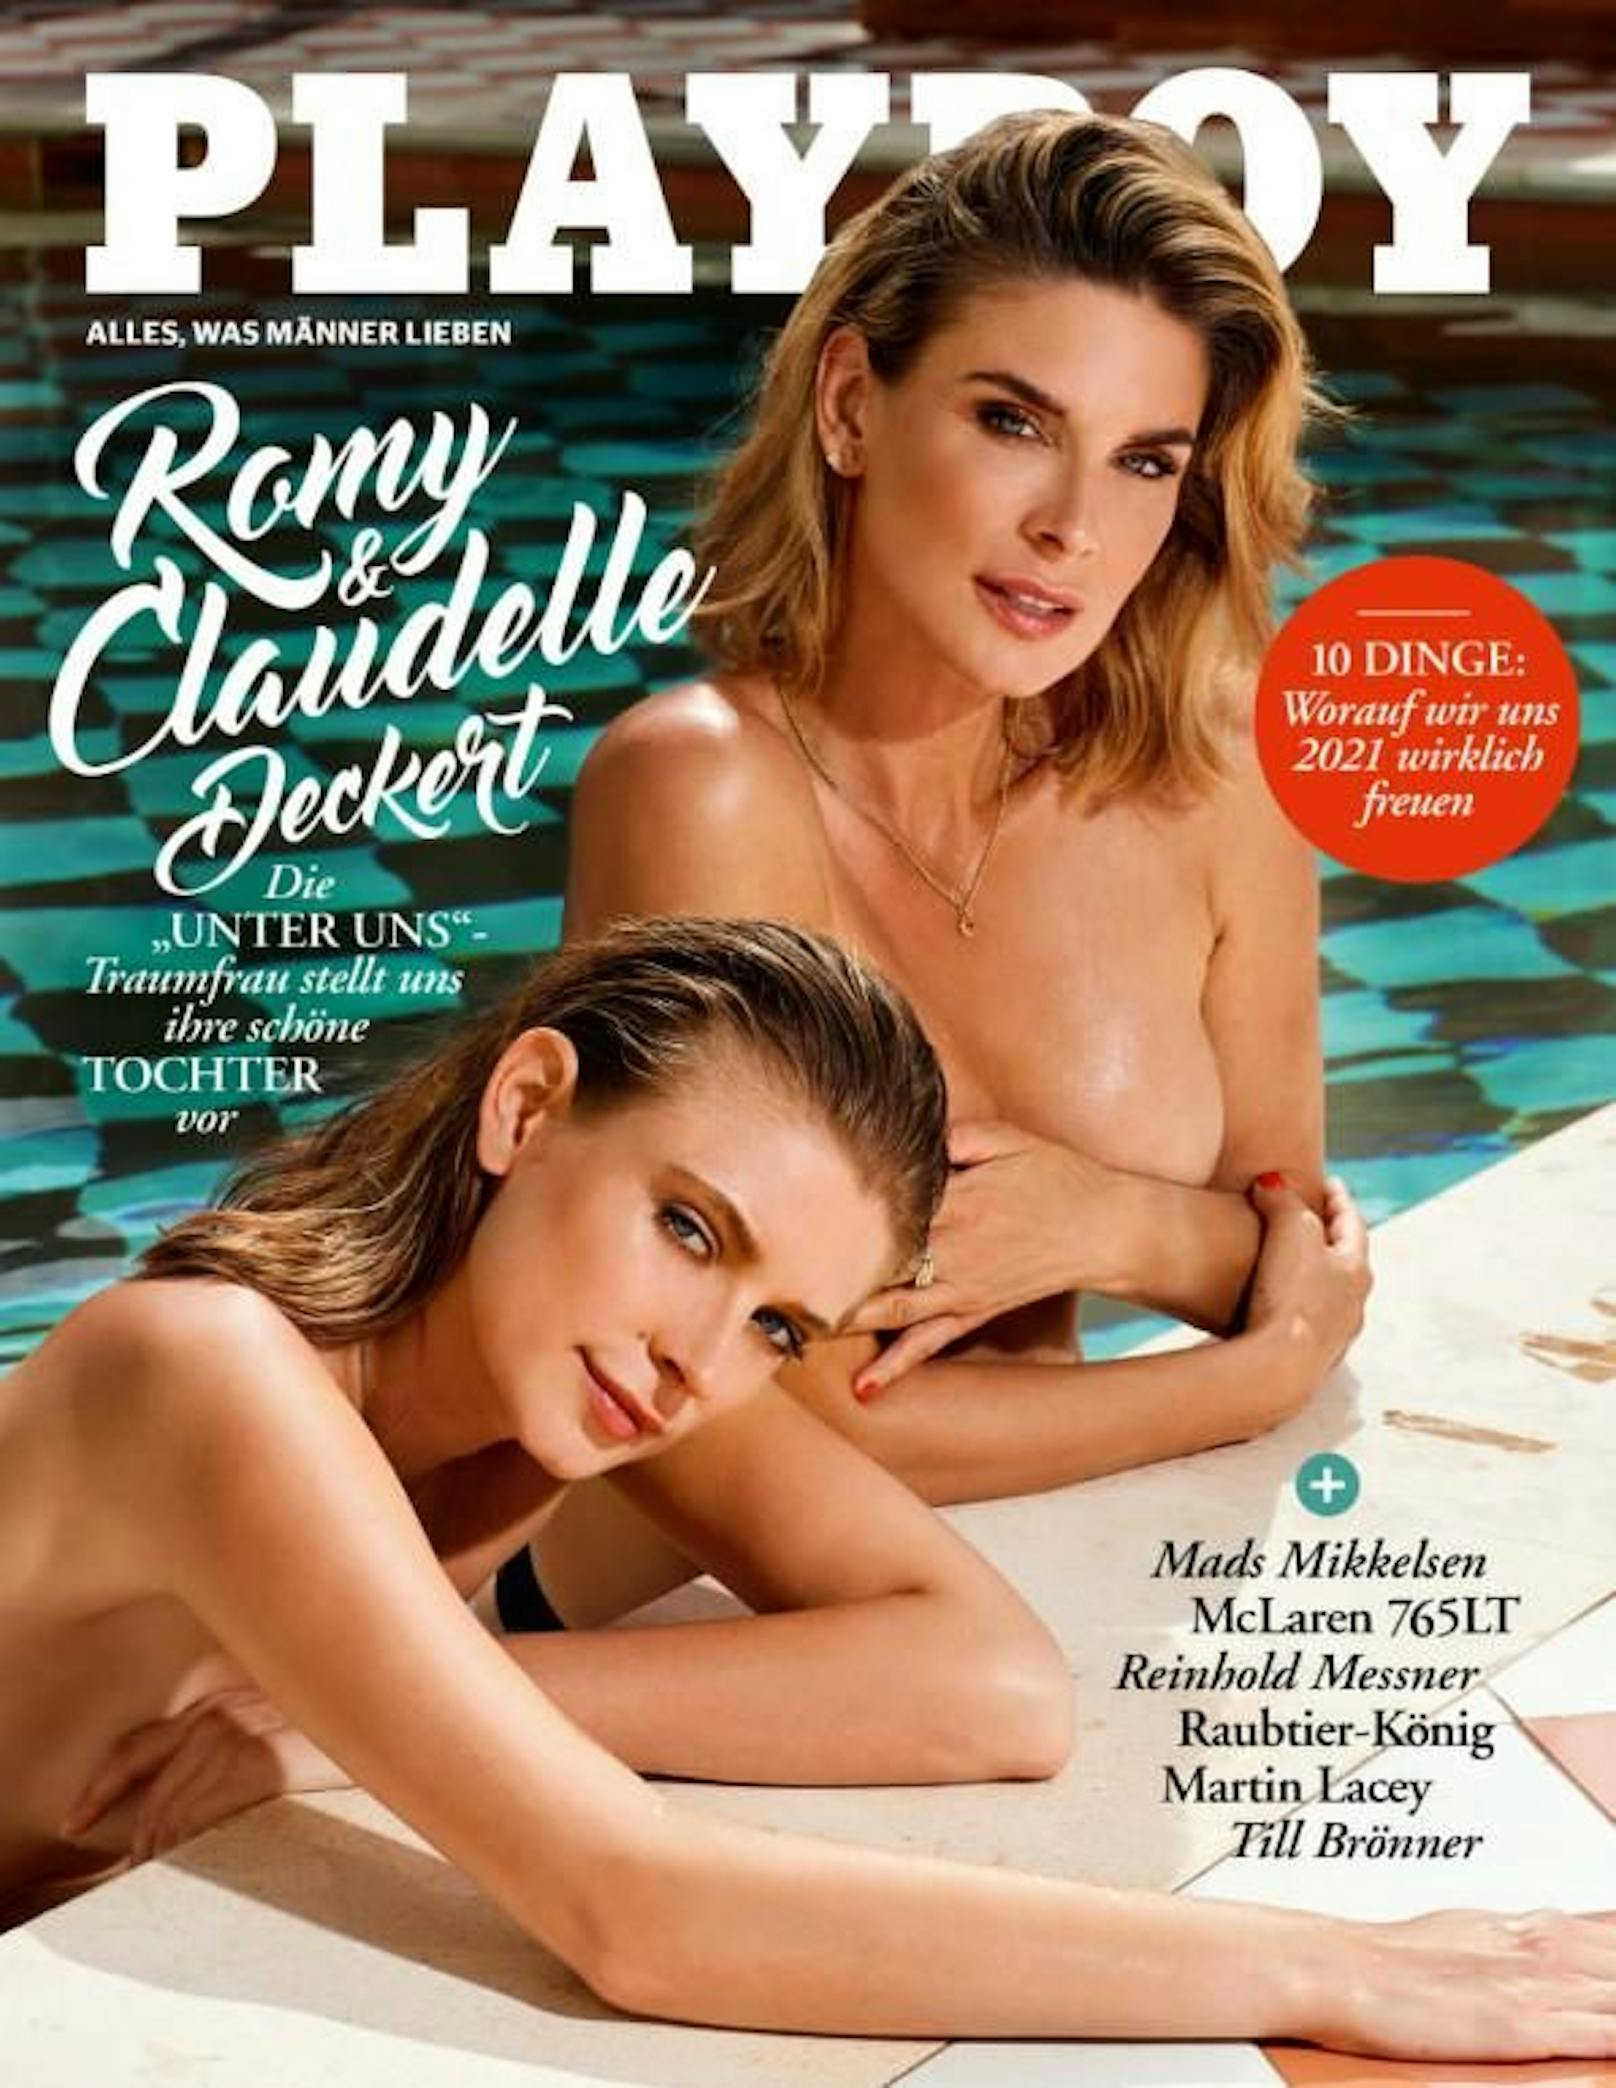 TV-Star Claudelle Deckert und ihre Tochter Romy im Playboy